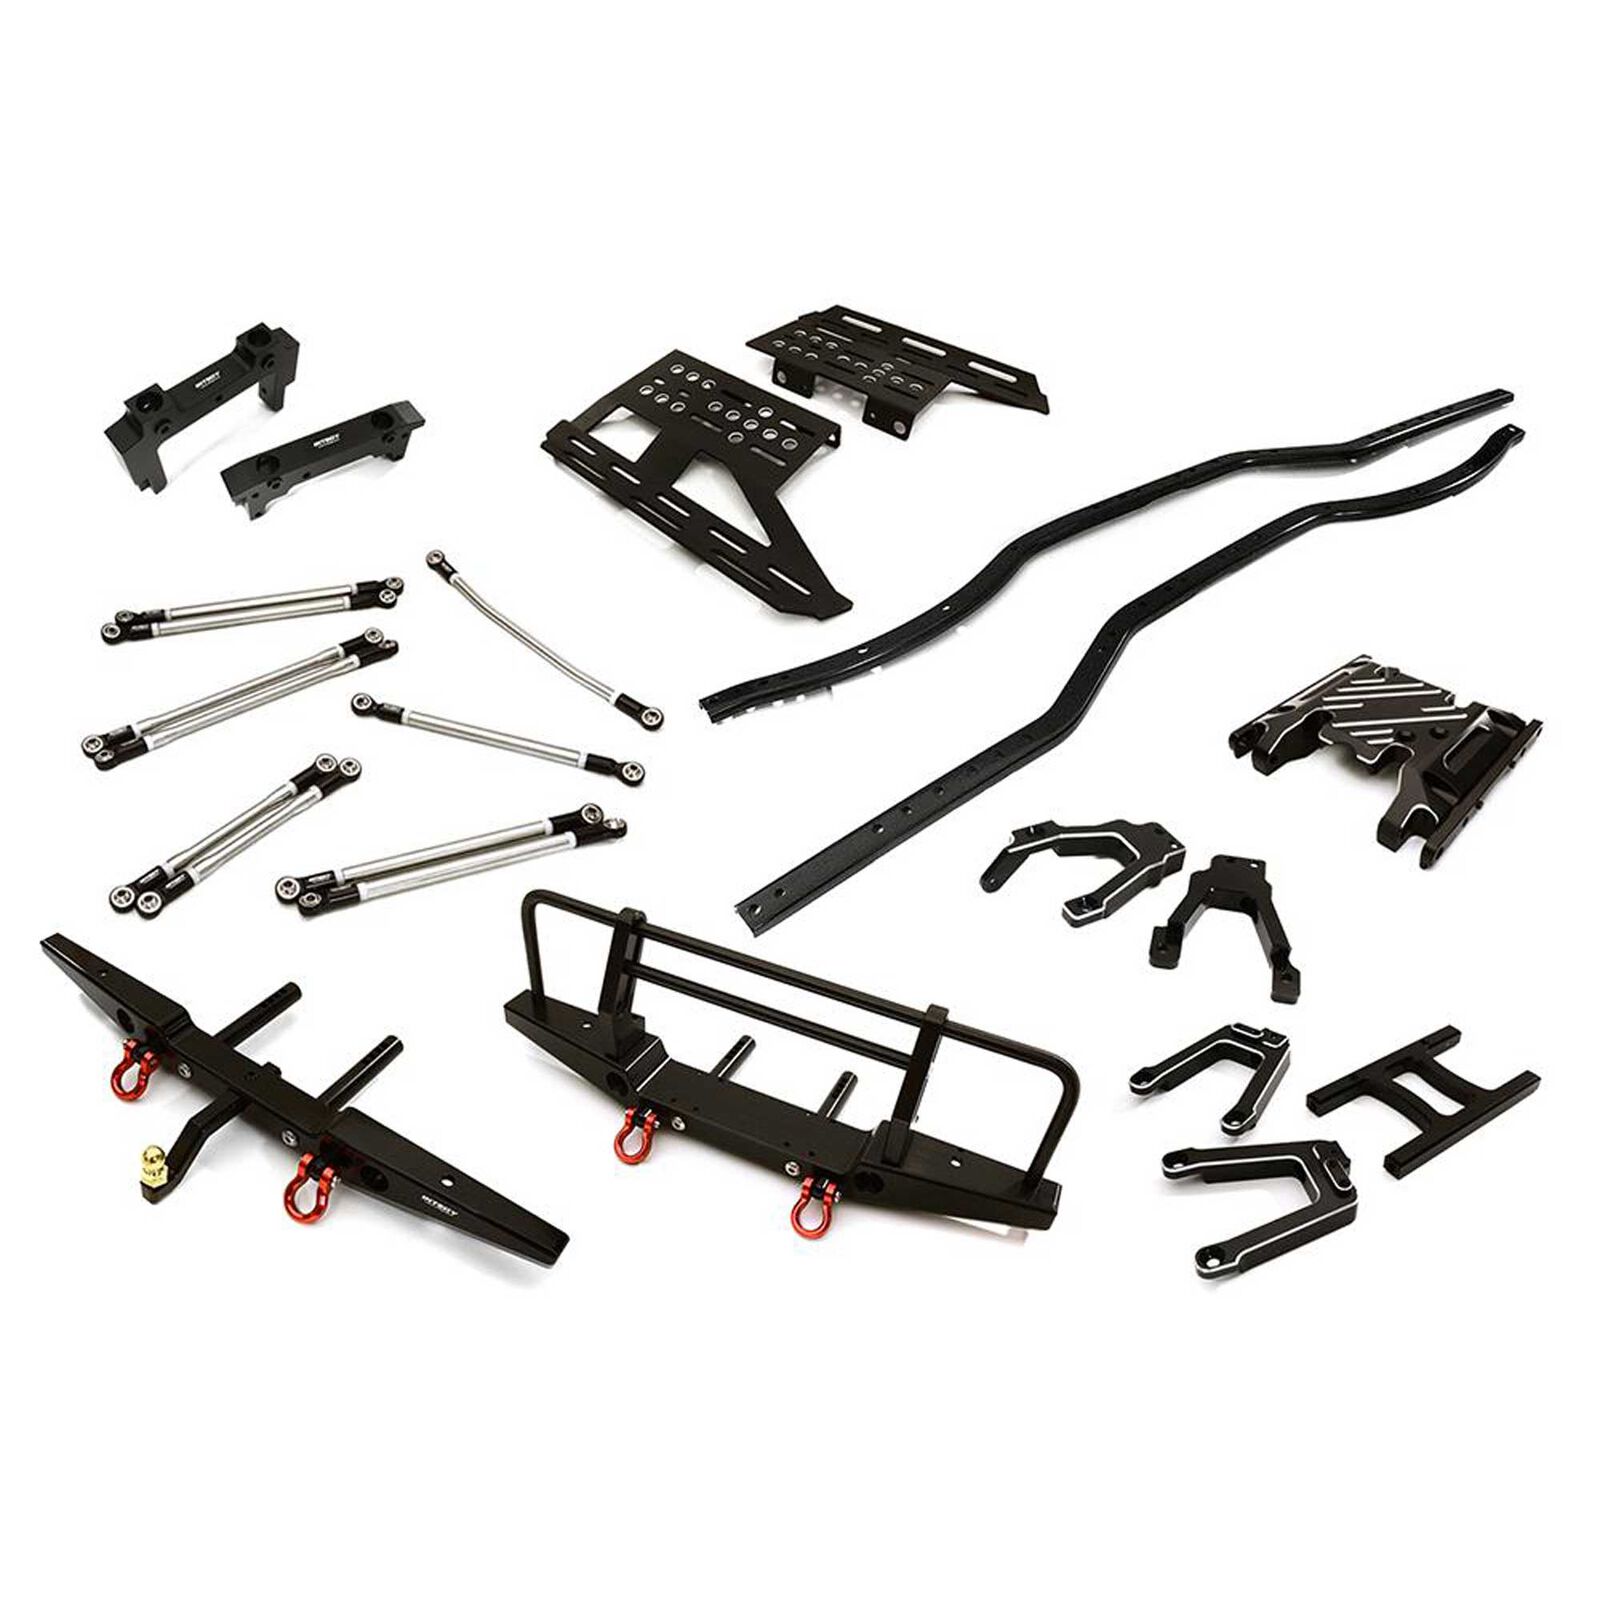 Steel Ladder Frame Chassis Kit with Hop-Ups, Black Side Rails: SCX10 II